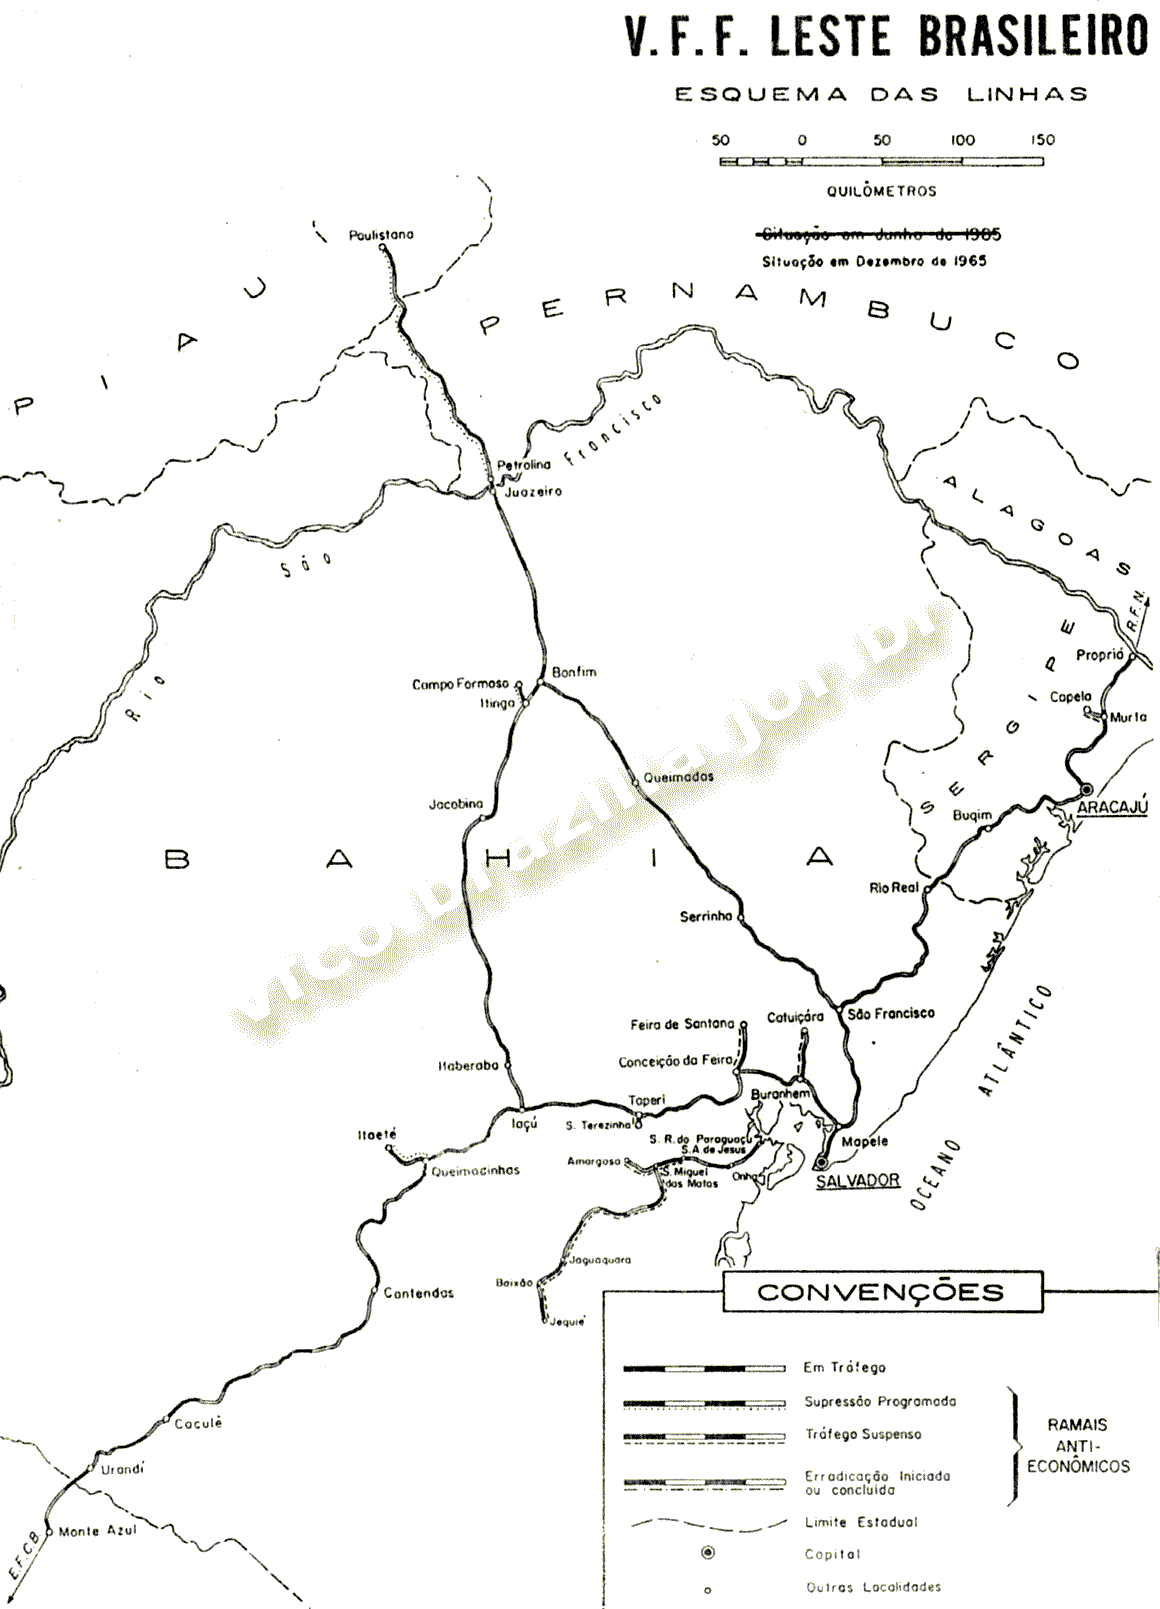 Mapa dos trilhos da VFFLB - Viação Férrea Federal Leste Brasileiro, da Rede Ferroviária Federal - RFFSA, em 1965